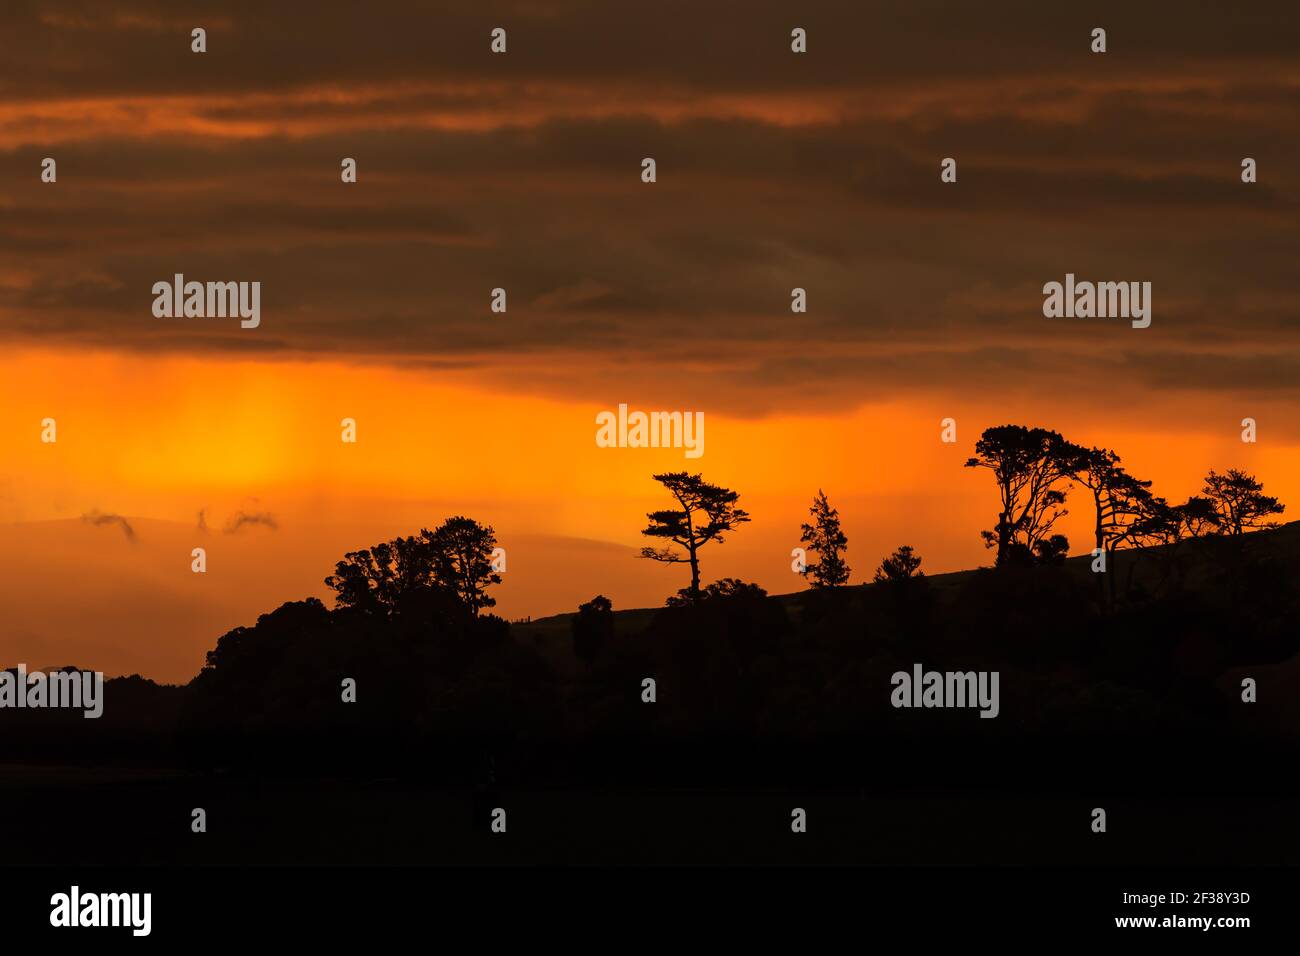 Alberi su una collina silhoueted contro un tramonto arancione luminoso cielo Foto Stock